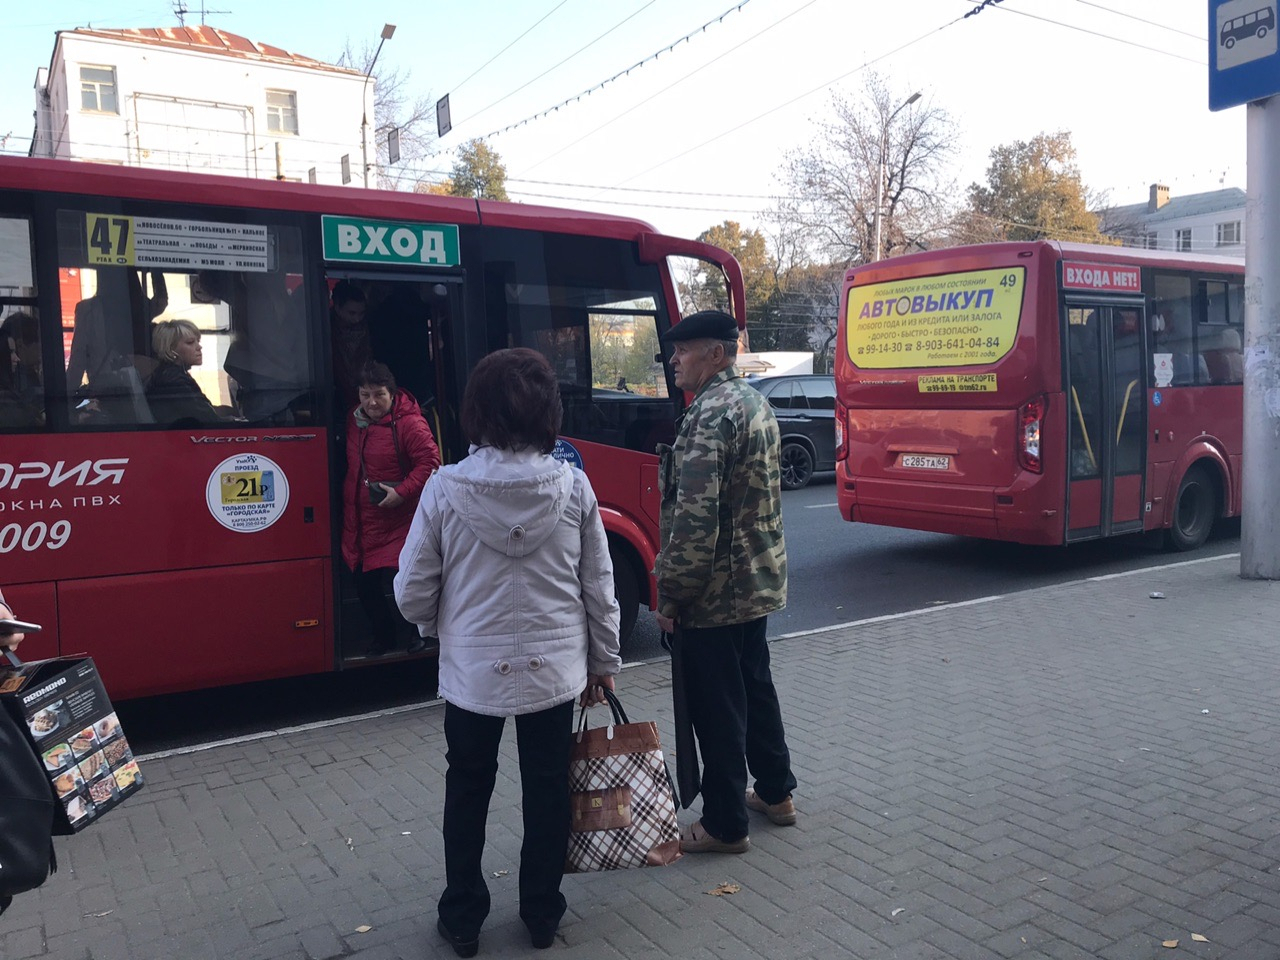 "Сегодня в час пик ждали 40 минут 47 маршрутку!": рязанцы вновь пожаловались на работу общественного транспорта